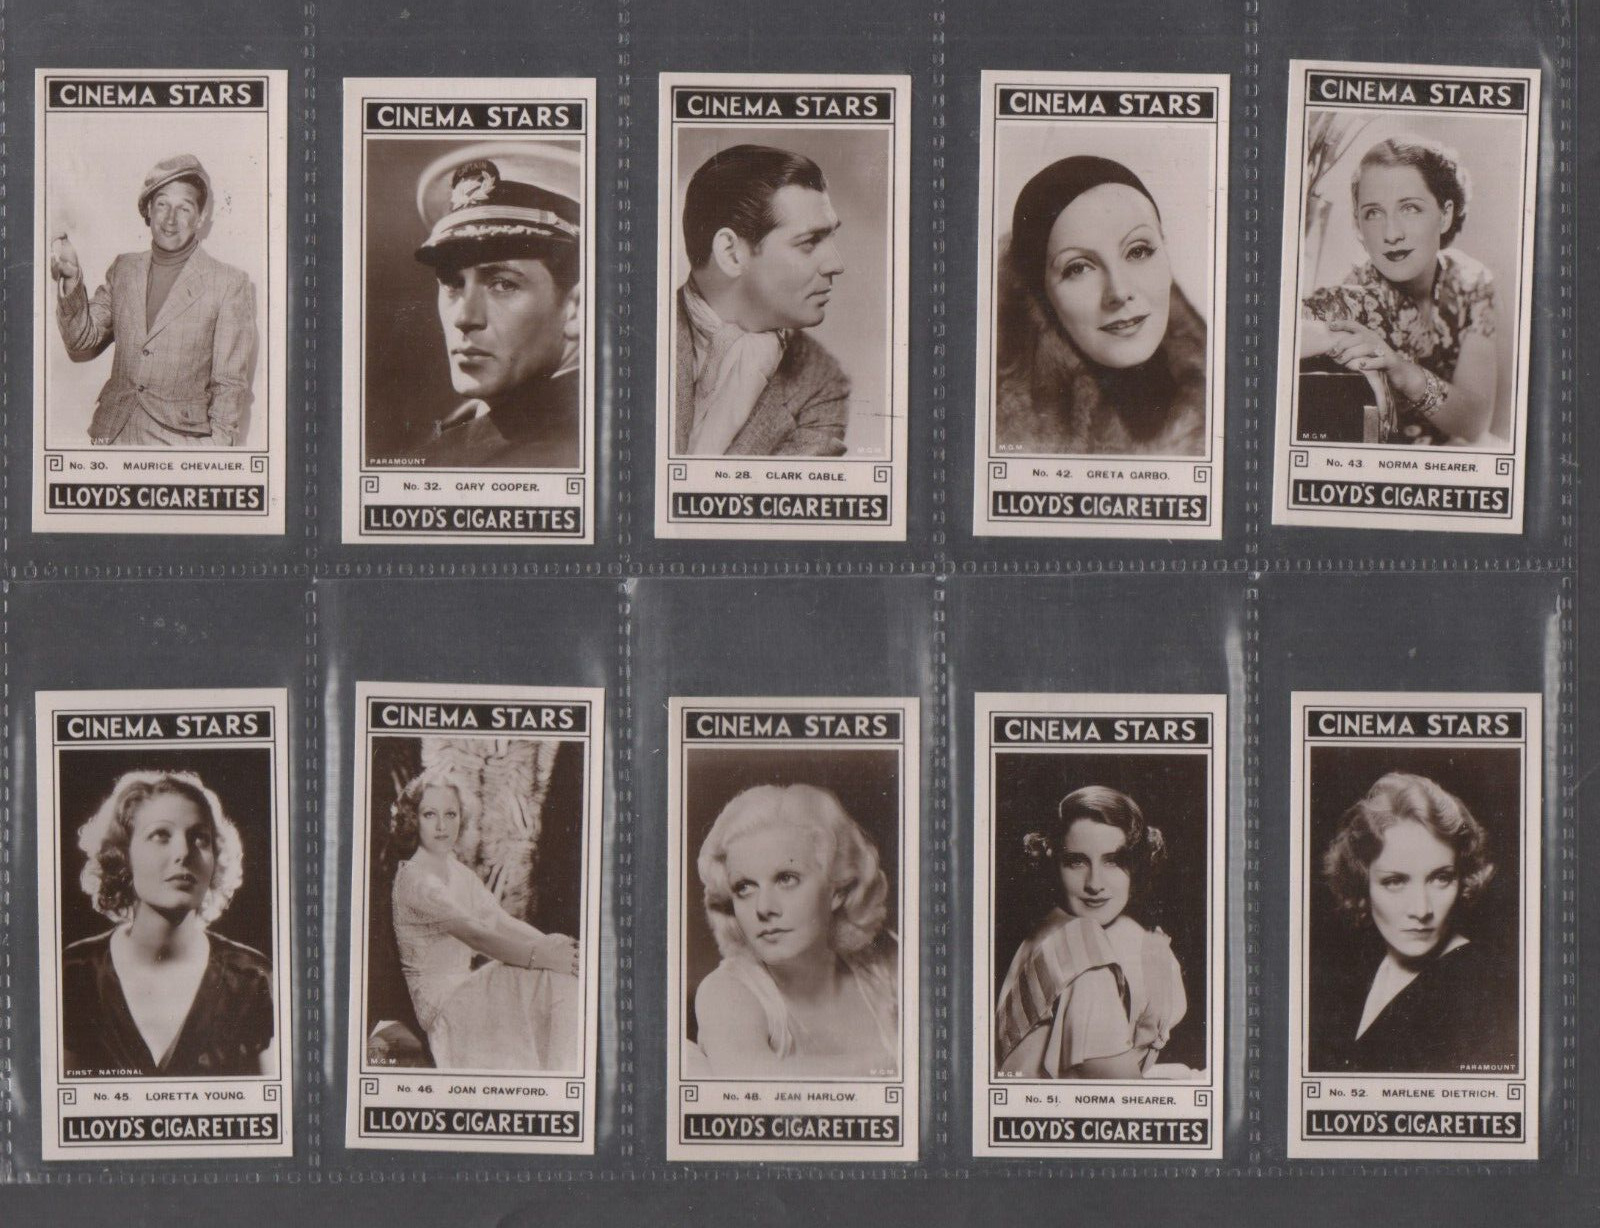 LLOYD SET:  CINEMA STARS  (28 - 54)   1935